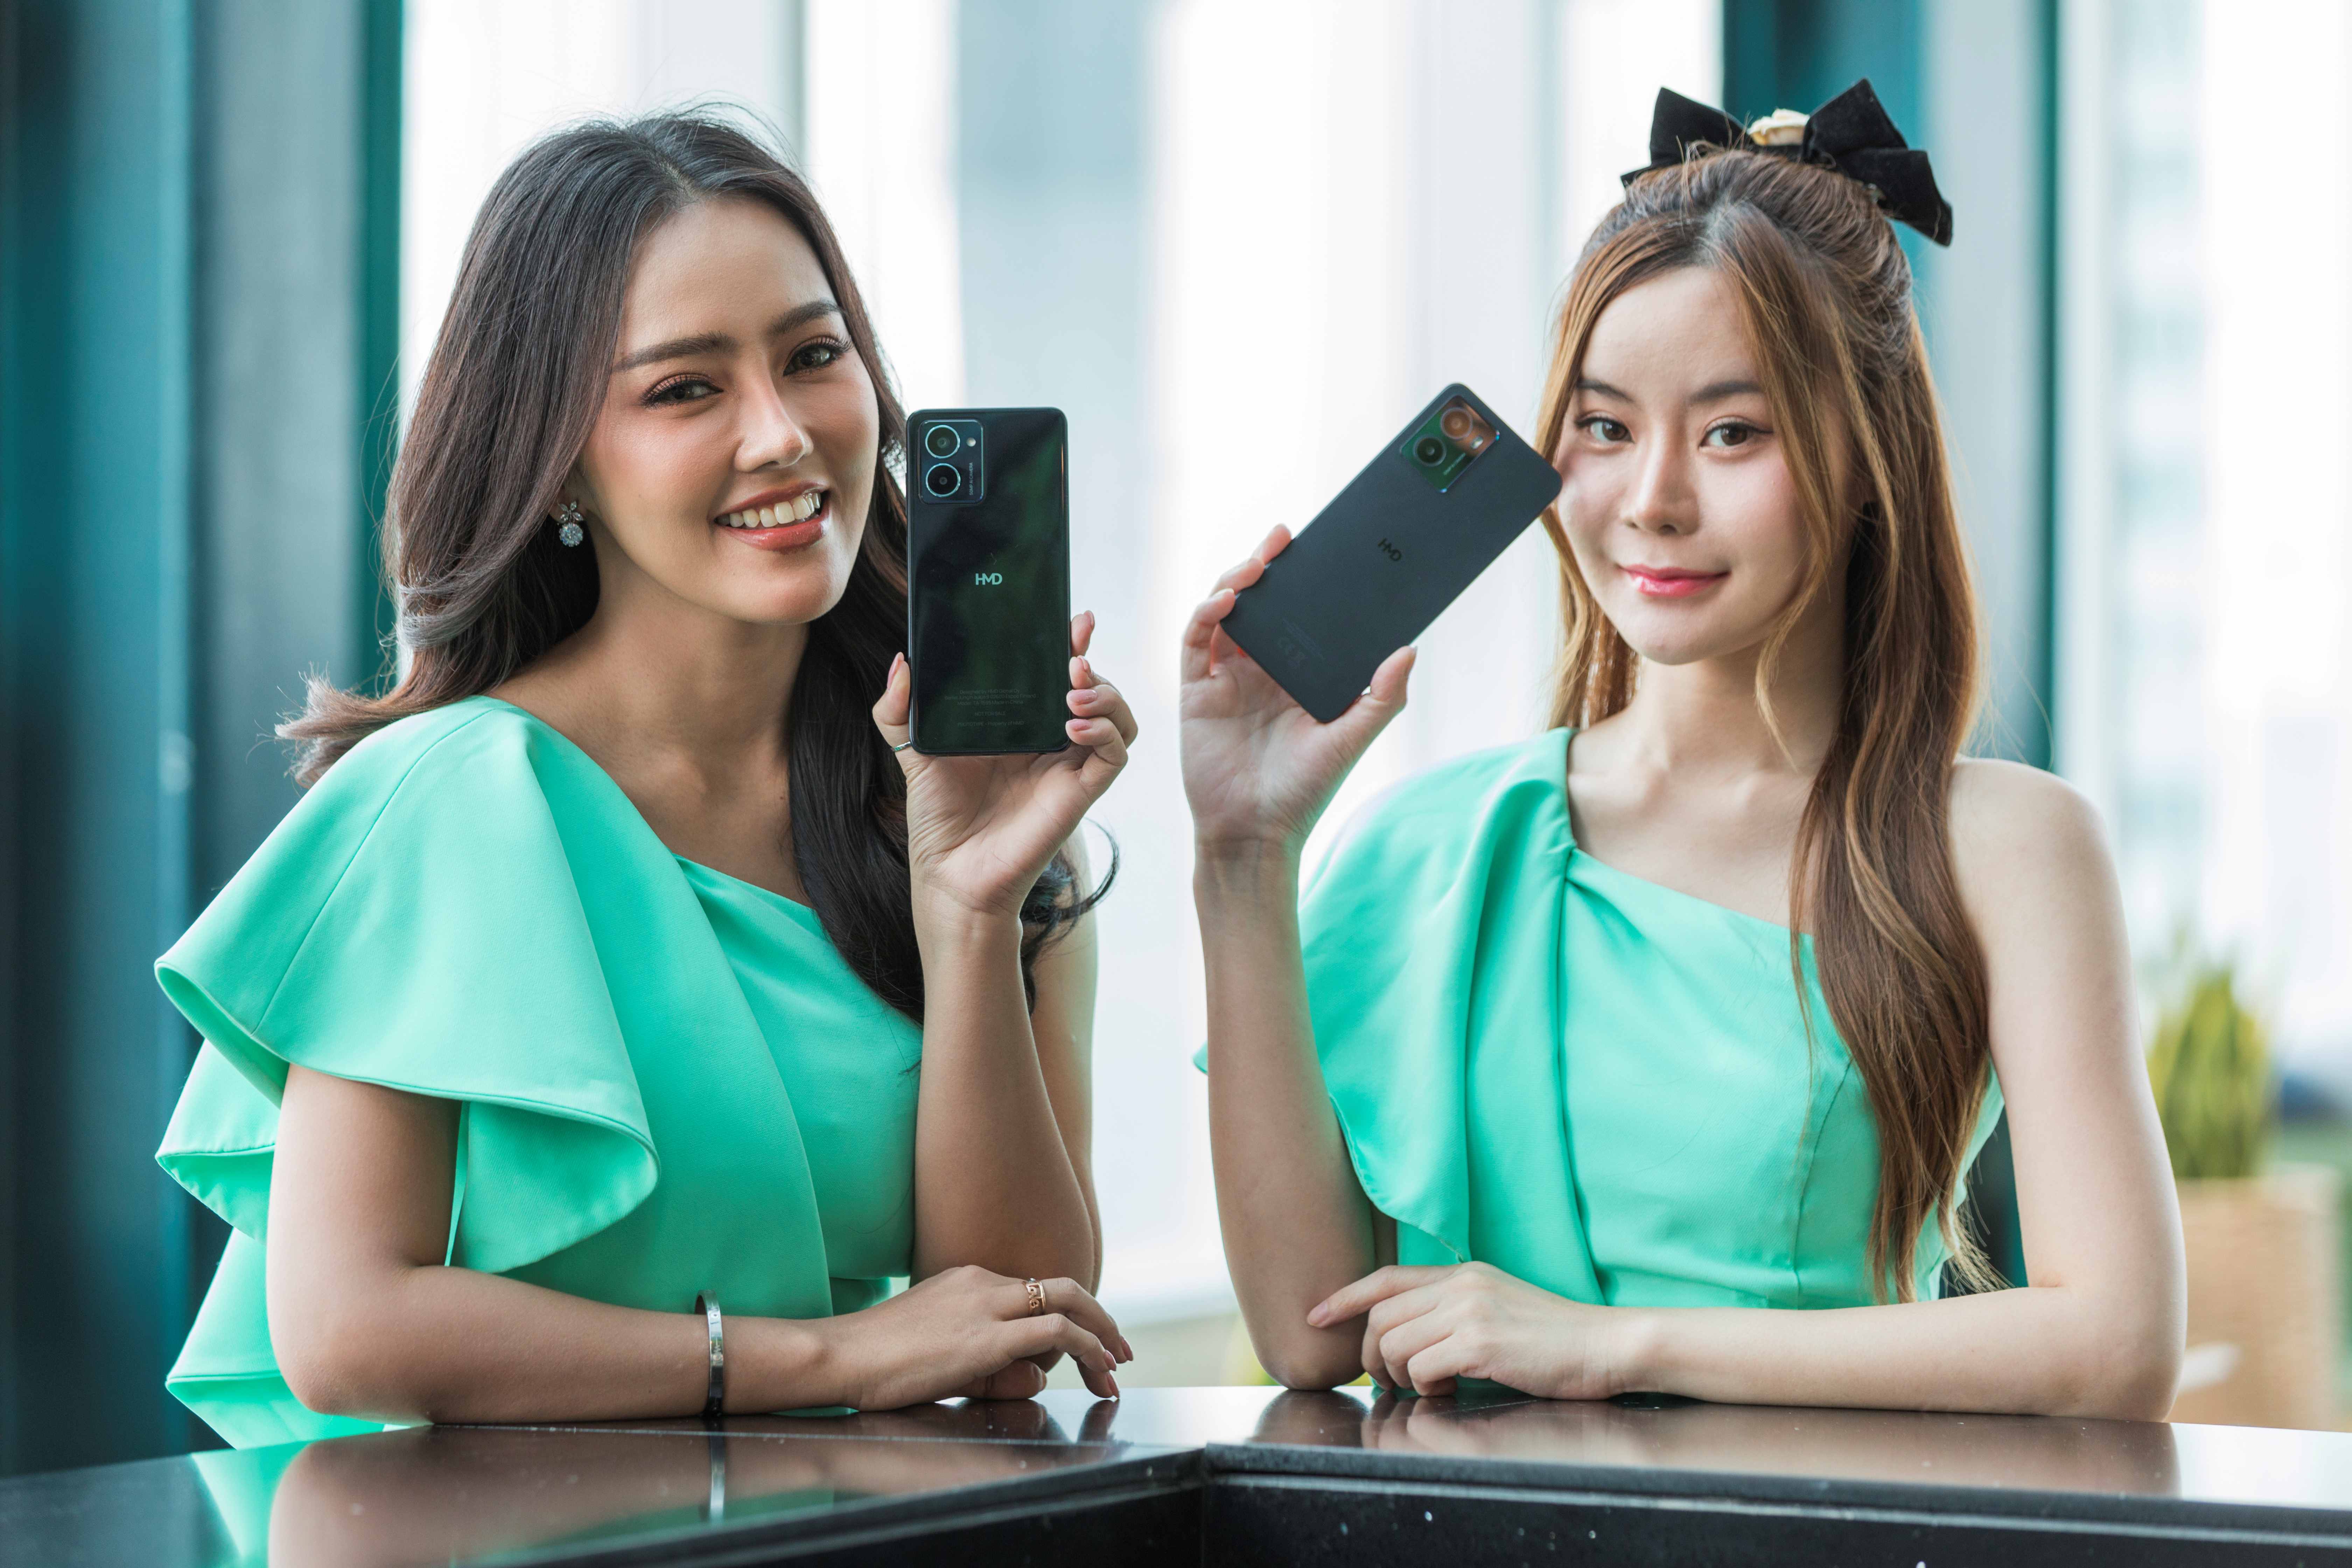 HMD เปิดตัวสมาร์ทโฟนน้องใหม่ตระกูล HMD PULSE FAMILY มาตรฐานยุโรป ครั้งแรกในไทย กล้อง 50MP เคาะราคาเริ่มต้น 3,790 บ.